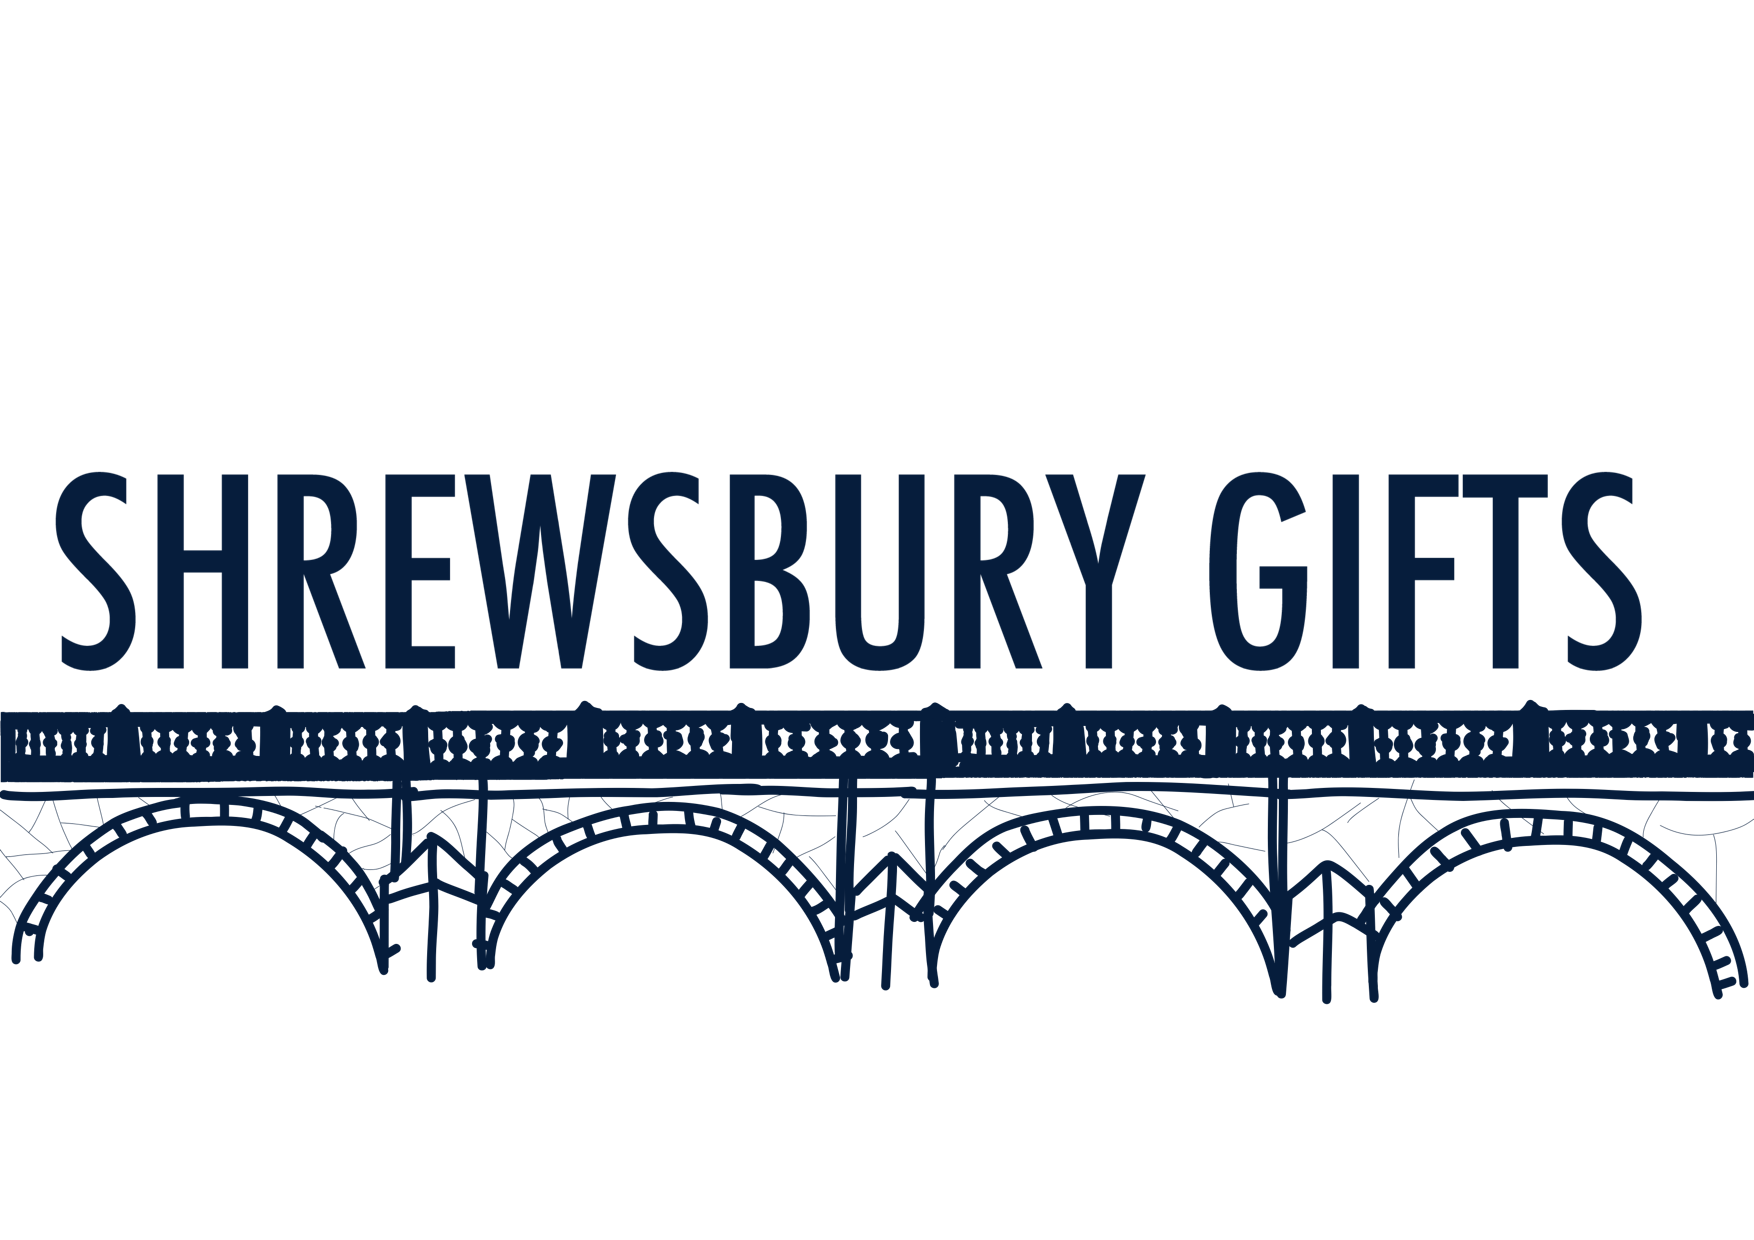 Shrewsbury Gifts